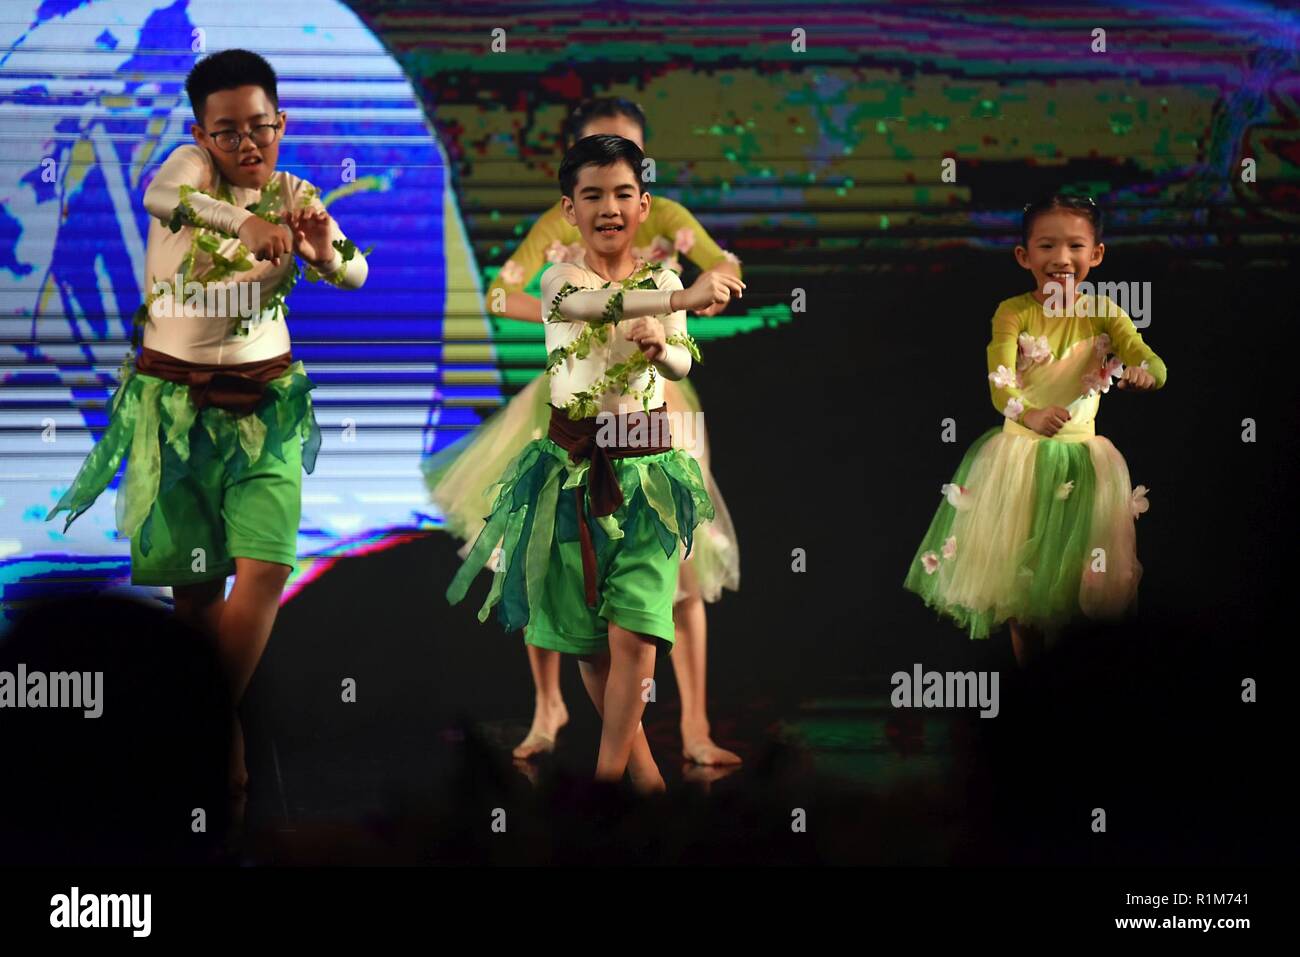 Bambini danza come parte del programma in occasione della cena di gala presso l'ASEAN dei ministri della Difesa Meeting-Plus in Singapore, Ottobre 19, 2018. Foto Stock